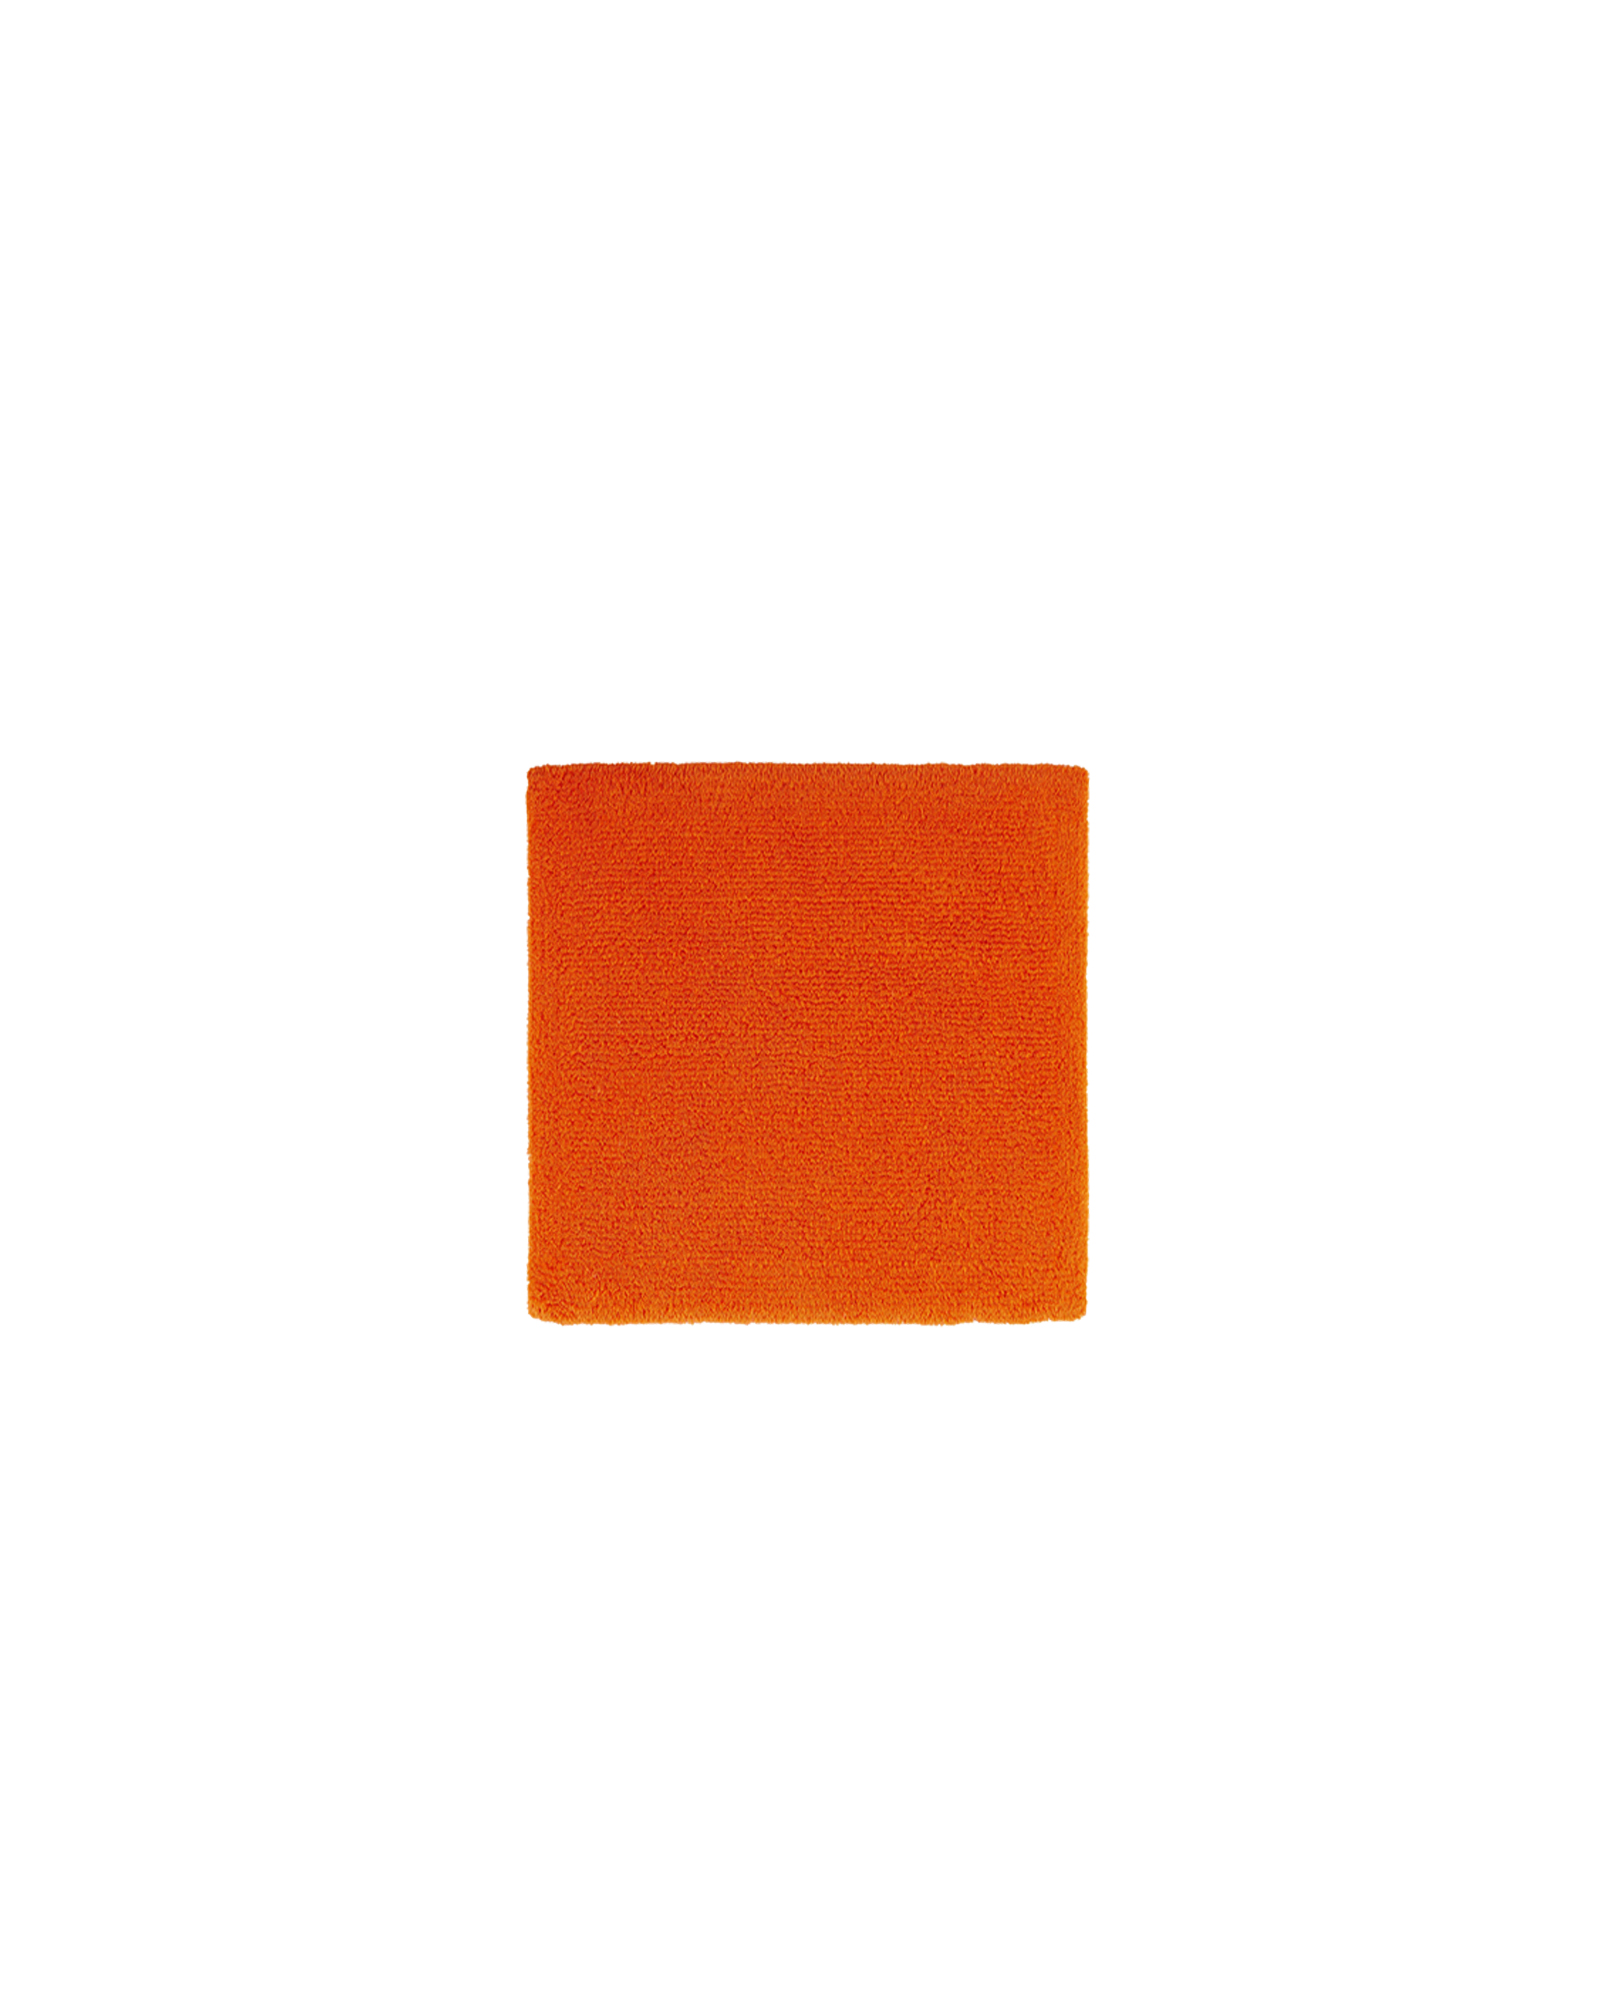 Abyss & Habidecor - Bathmat BAY 614 Tangerine - 60x60 cm - 614 Tangerine 